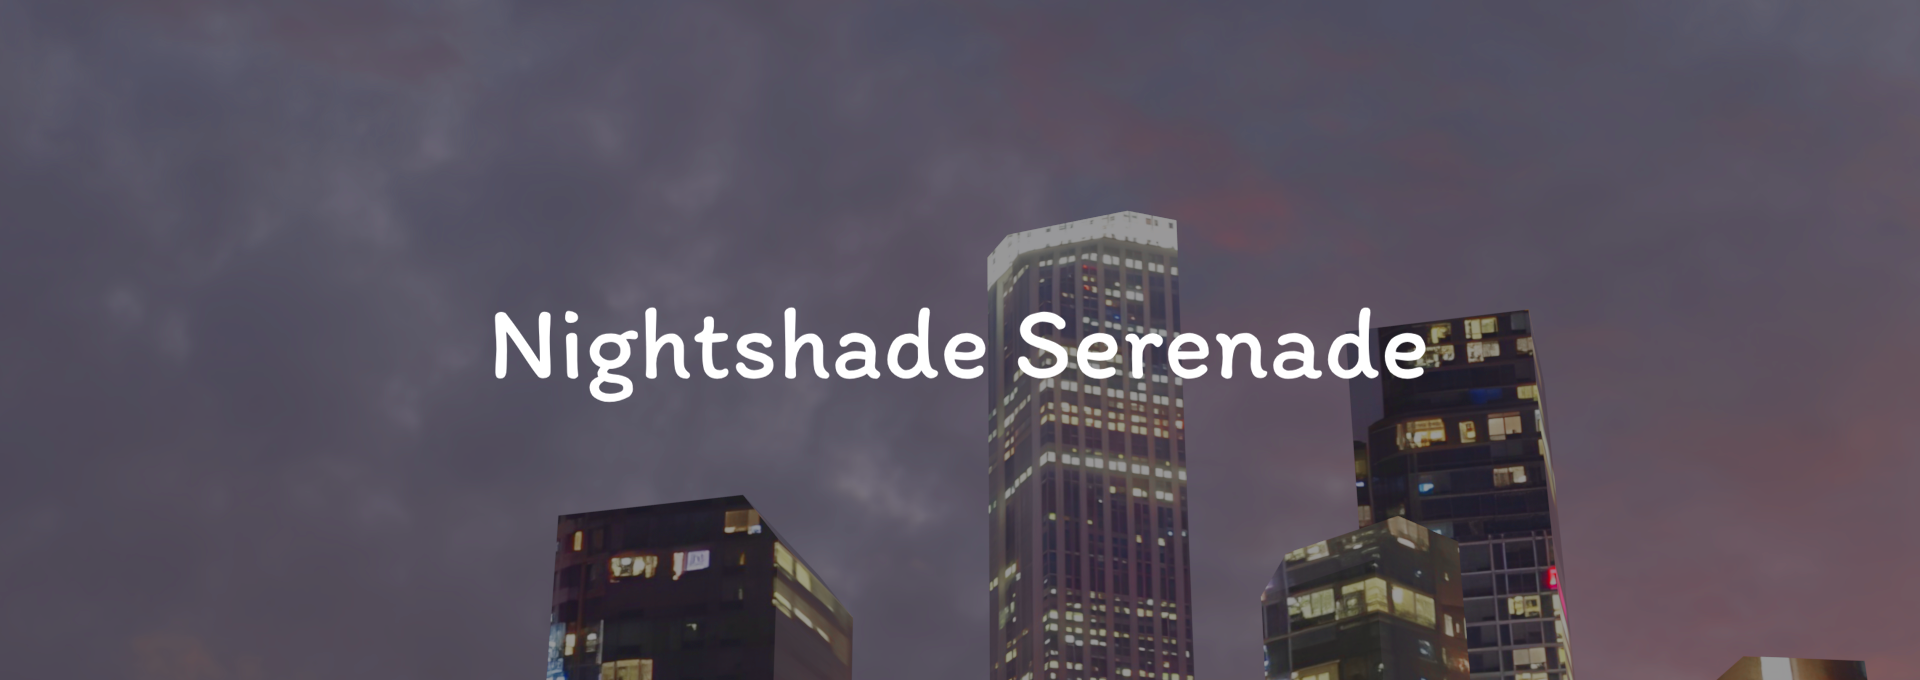 Nightshade Serenade